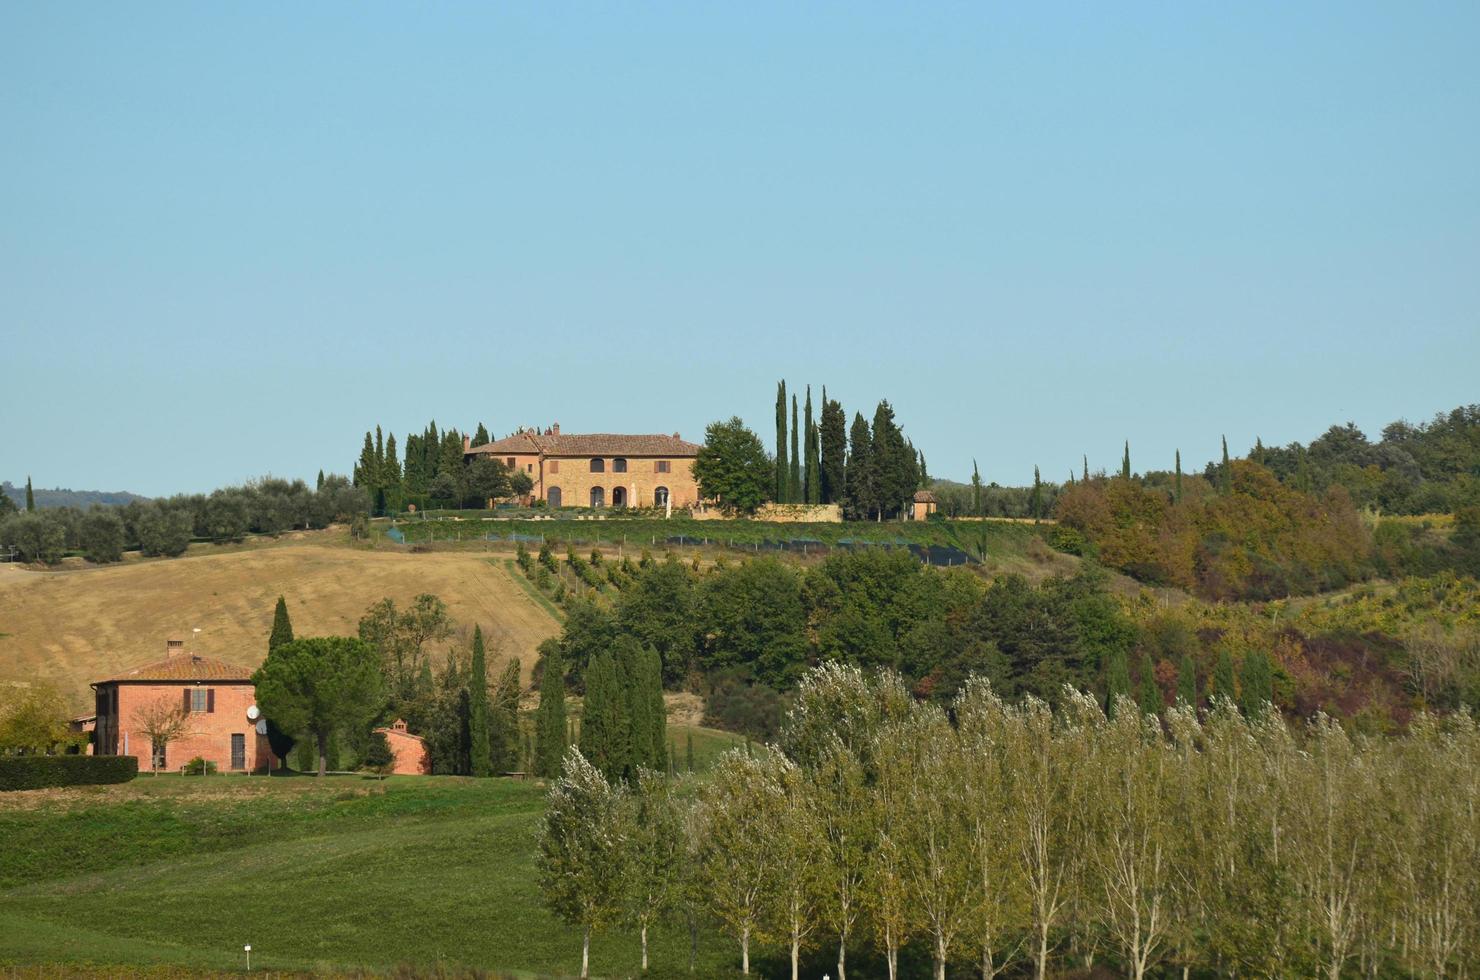 underbara vingård i Toscana, Italien foto